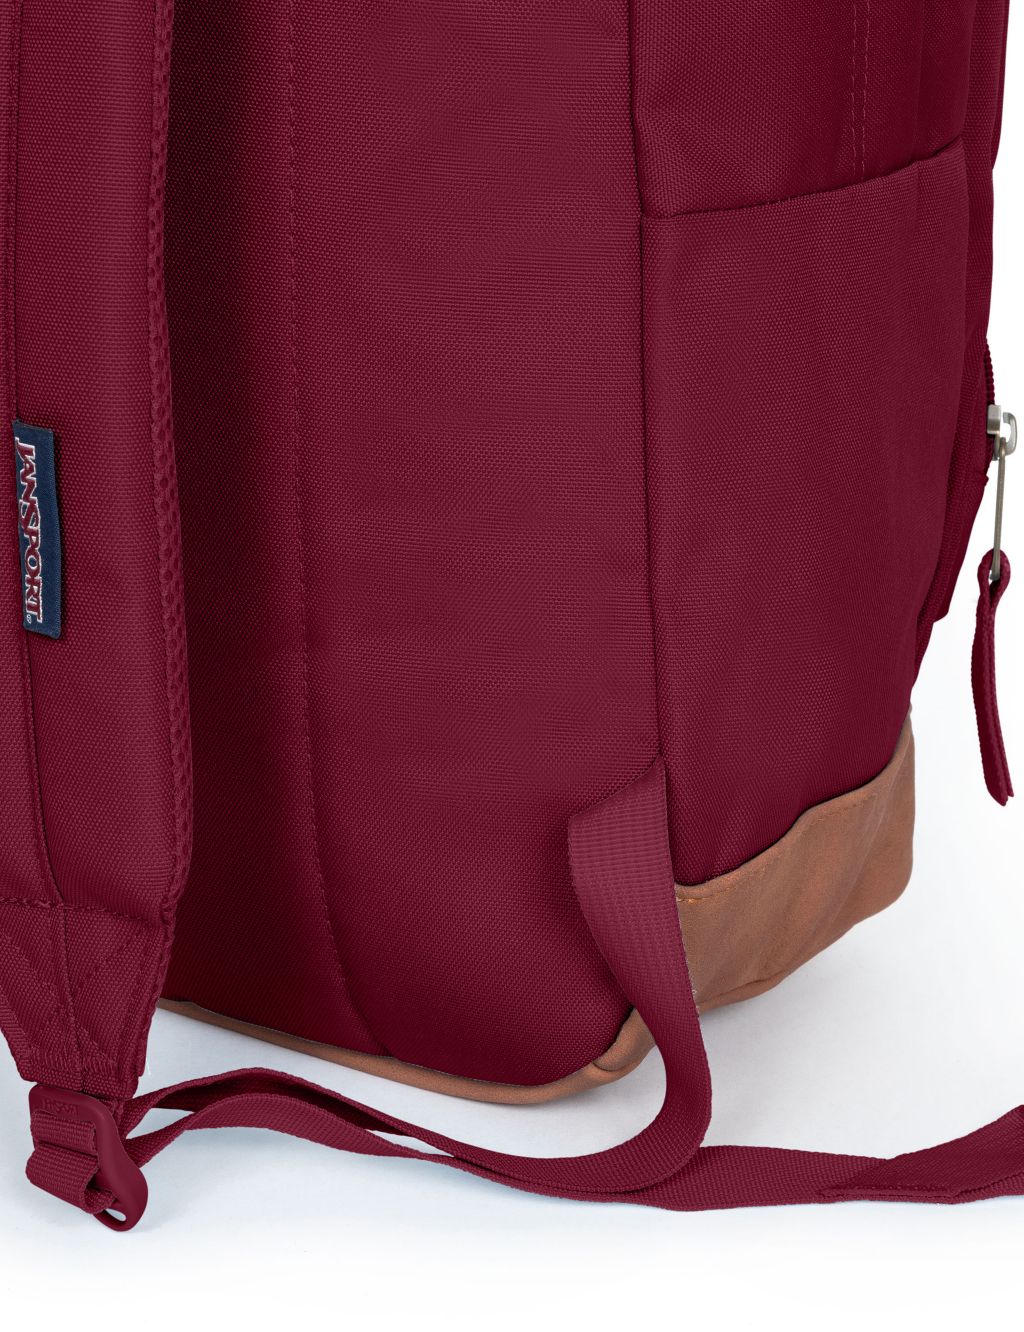 Cortlandt Multi Pocket Backpack image 6